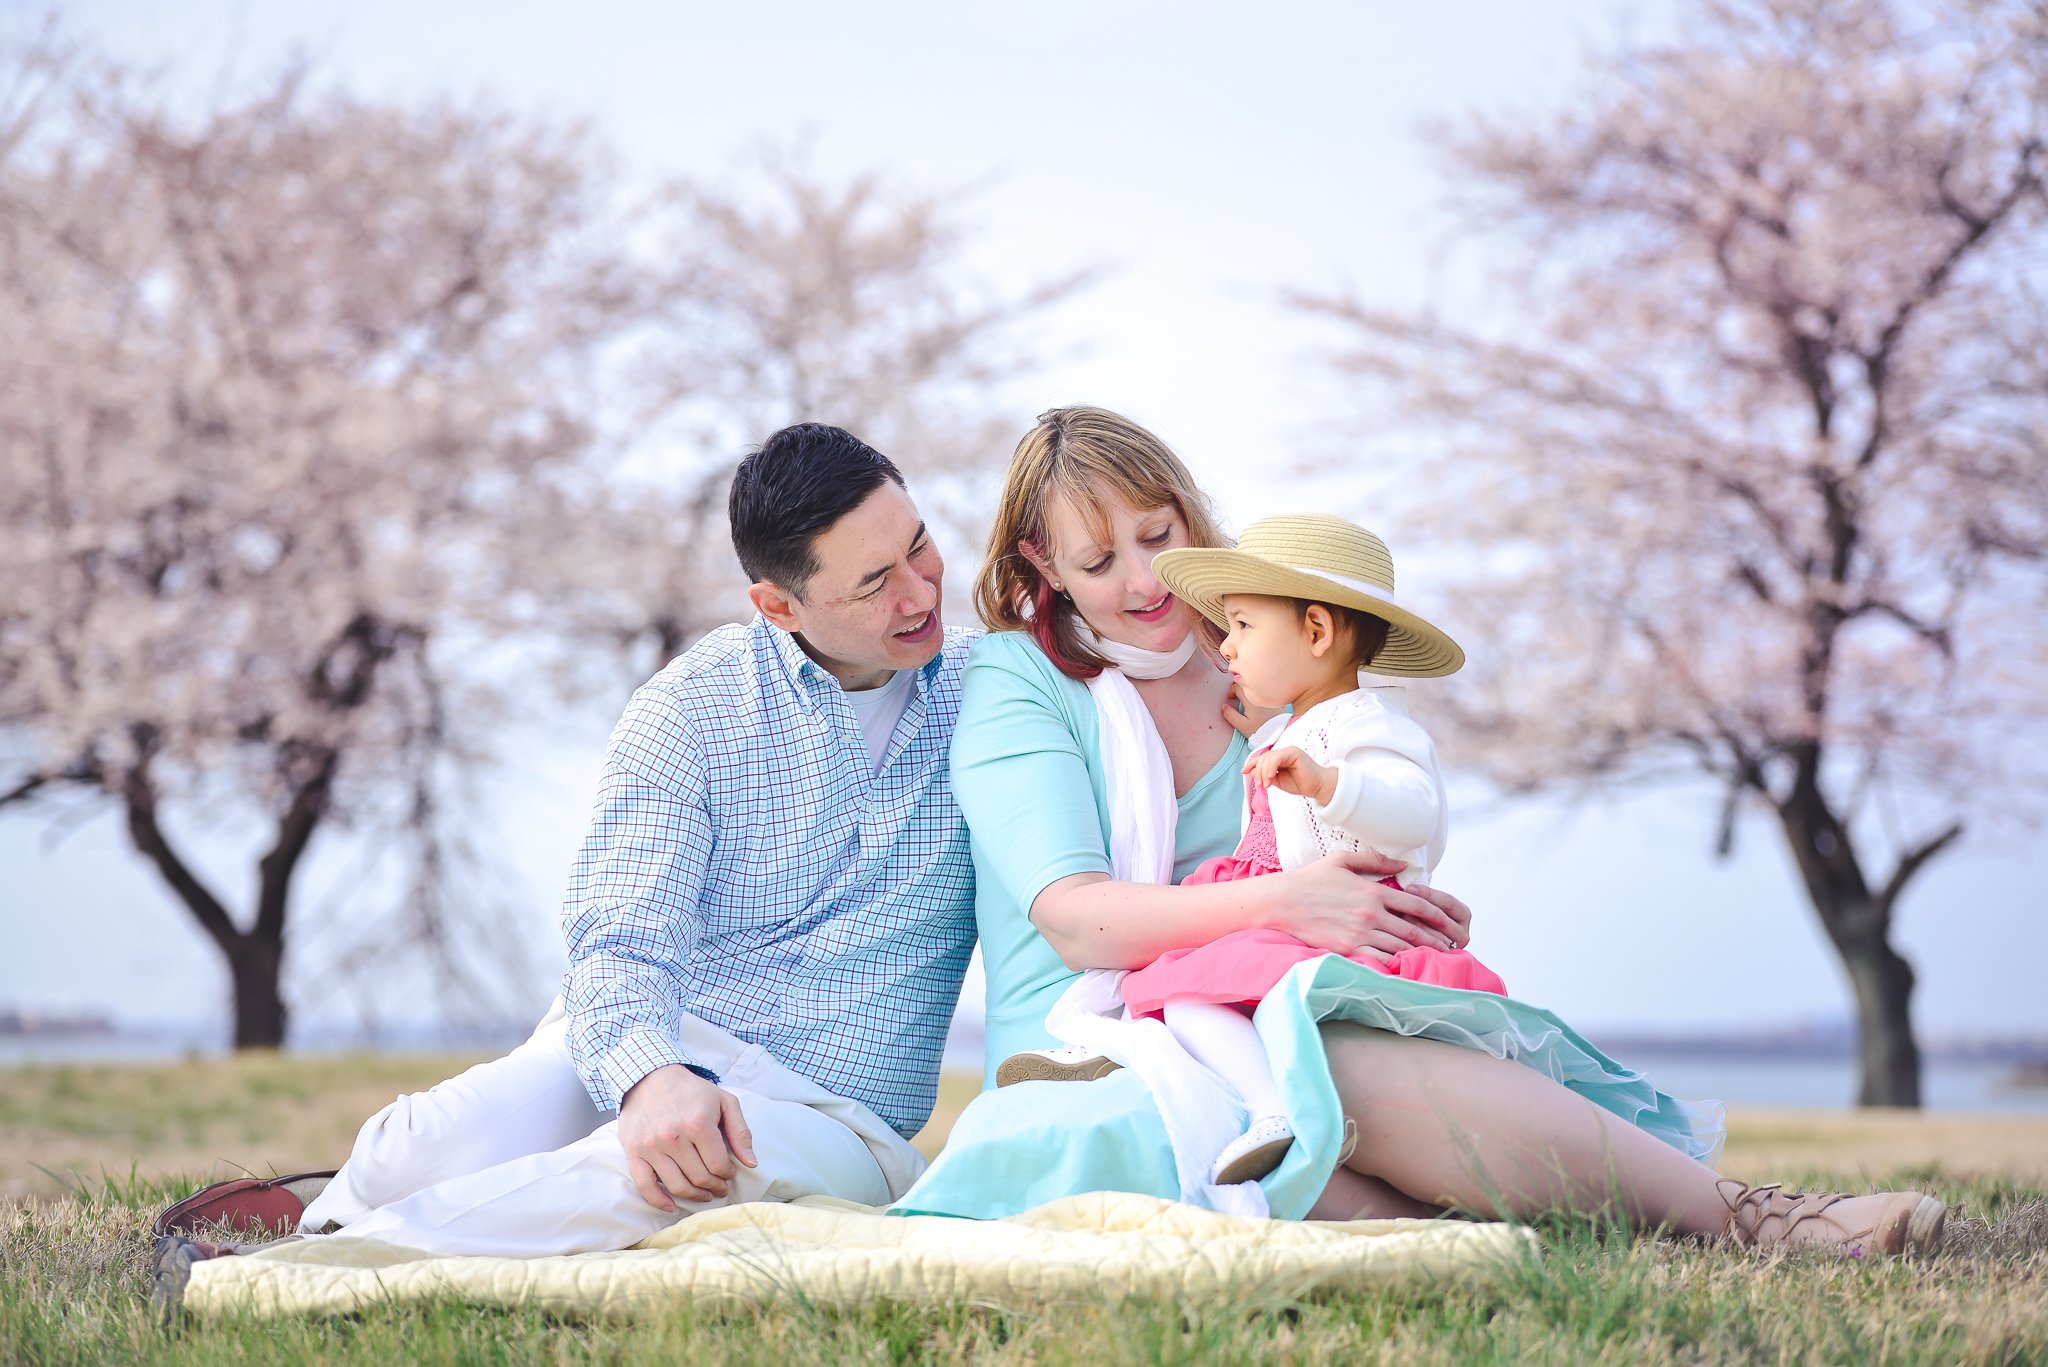 Family photo session - cherry blossom season in Washington DC - DC MD VA Family Photographer